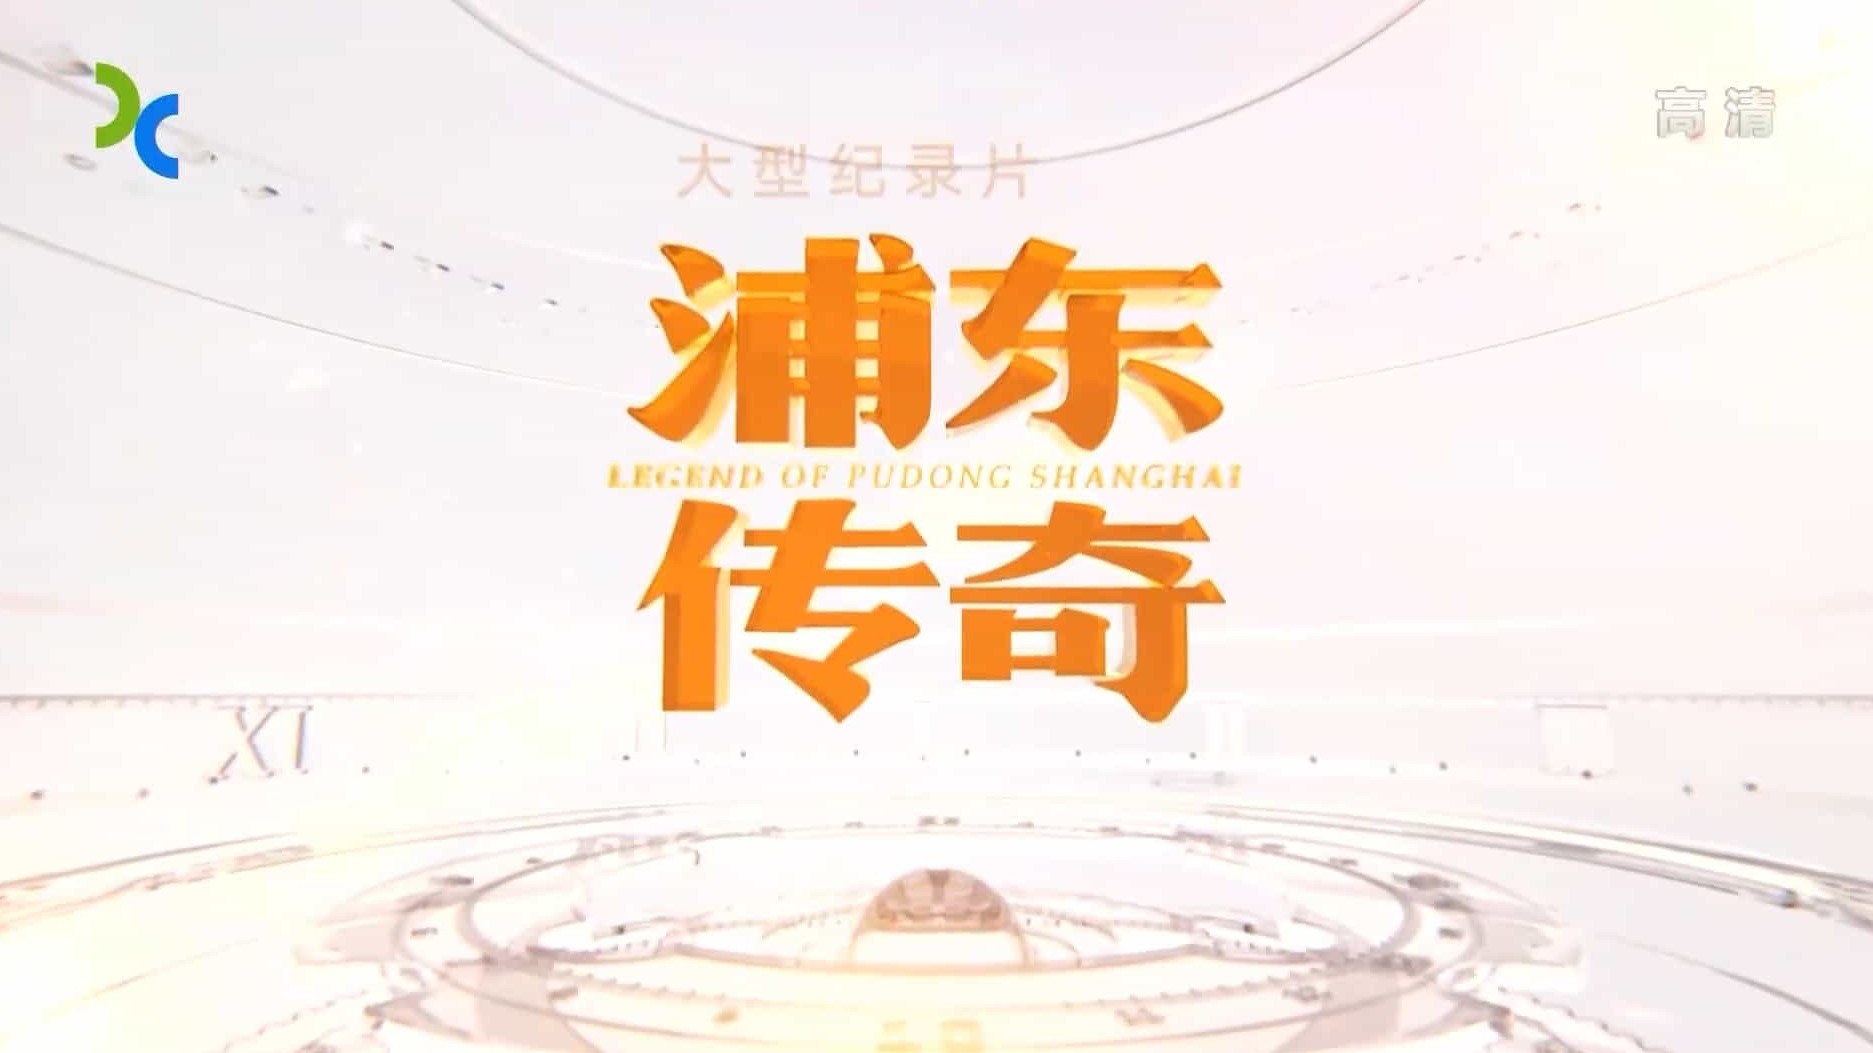  上海纪实频道《浦东传奇 Legend of Pudong Shanghai》全5集 国语中字 1080P高清下载